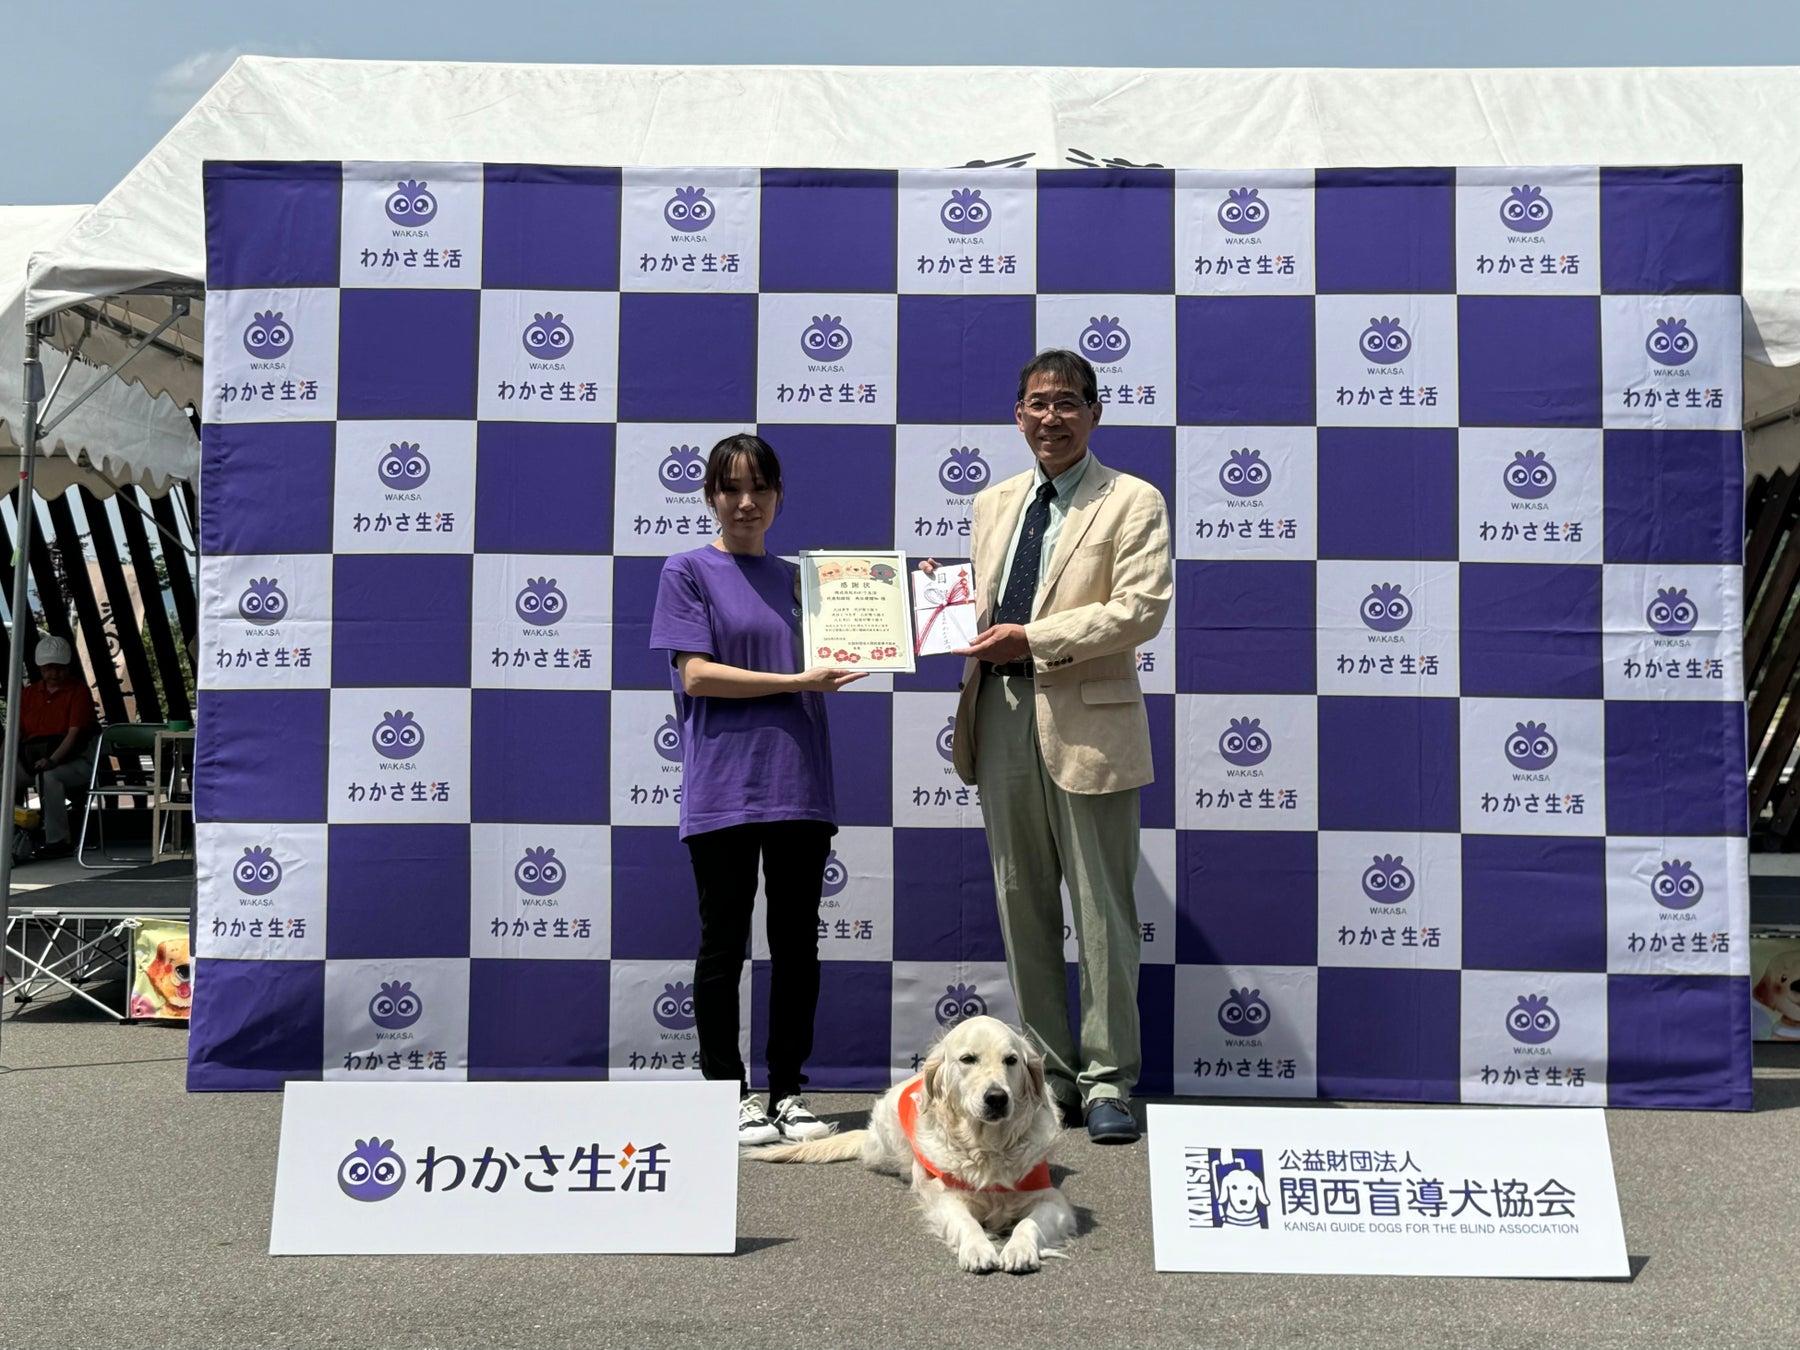 わかさ生活から関西盲導犬協会へ眼科検診費用として400,000円を寄付いたしました。